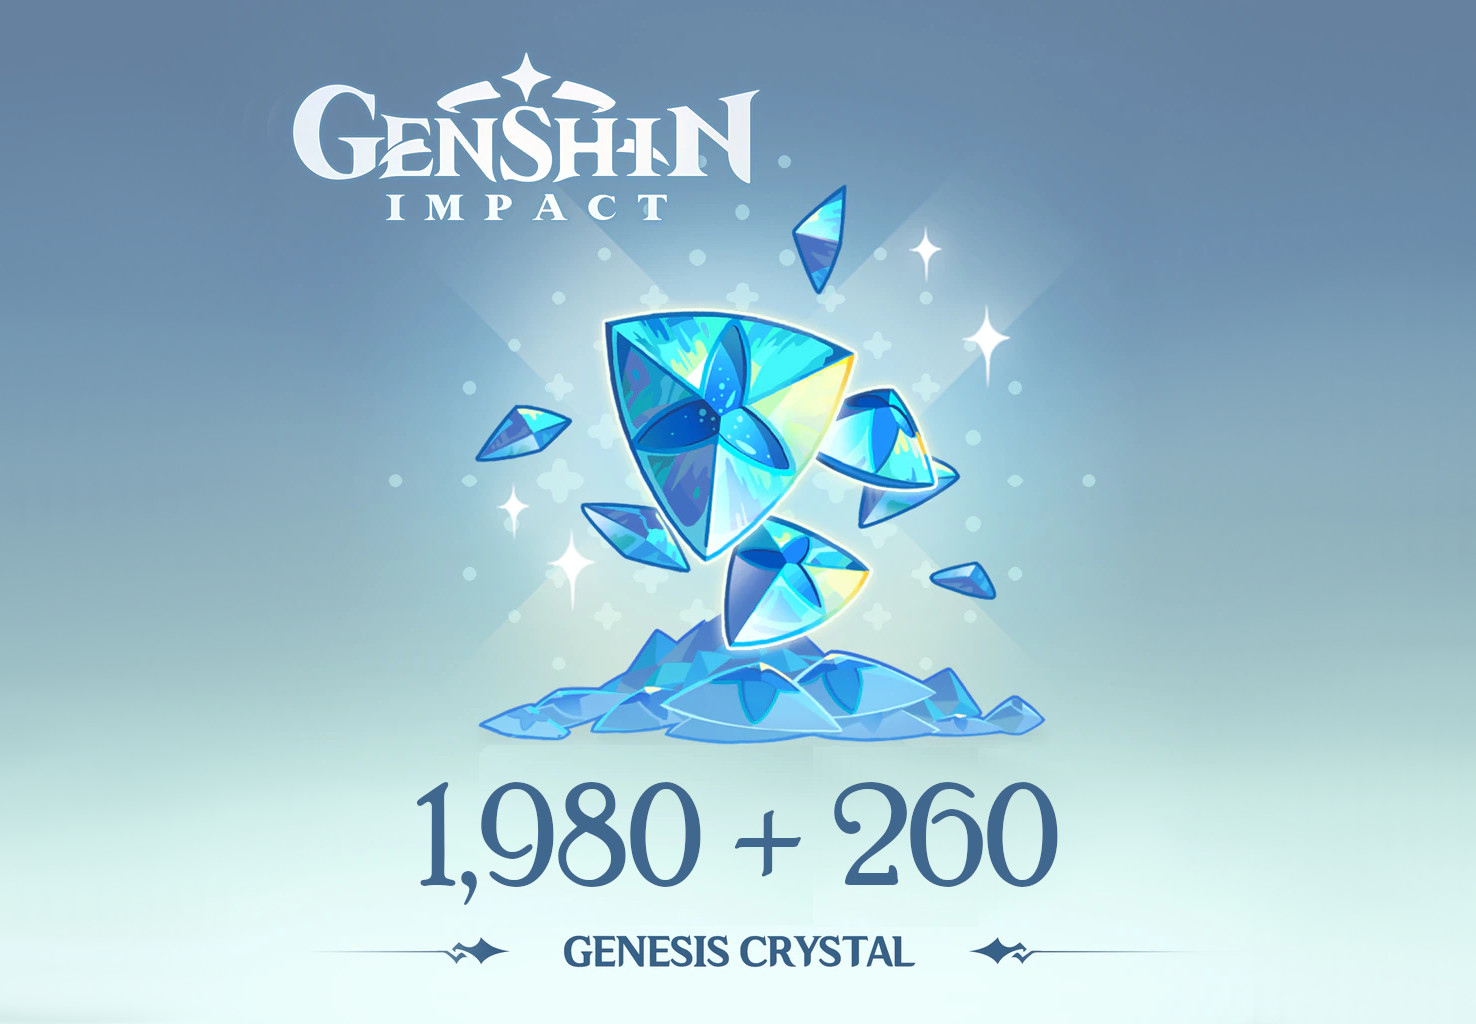 Genshin Impact - 1,980 + 260 Genesis Crystals Reidos Voucher 33.9 $